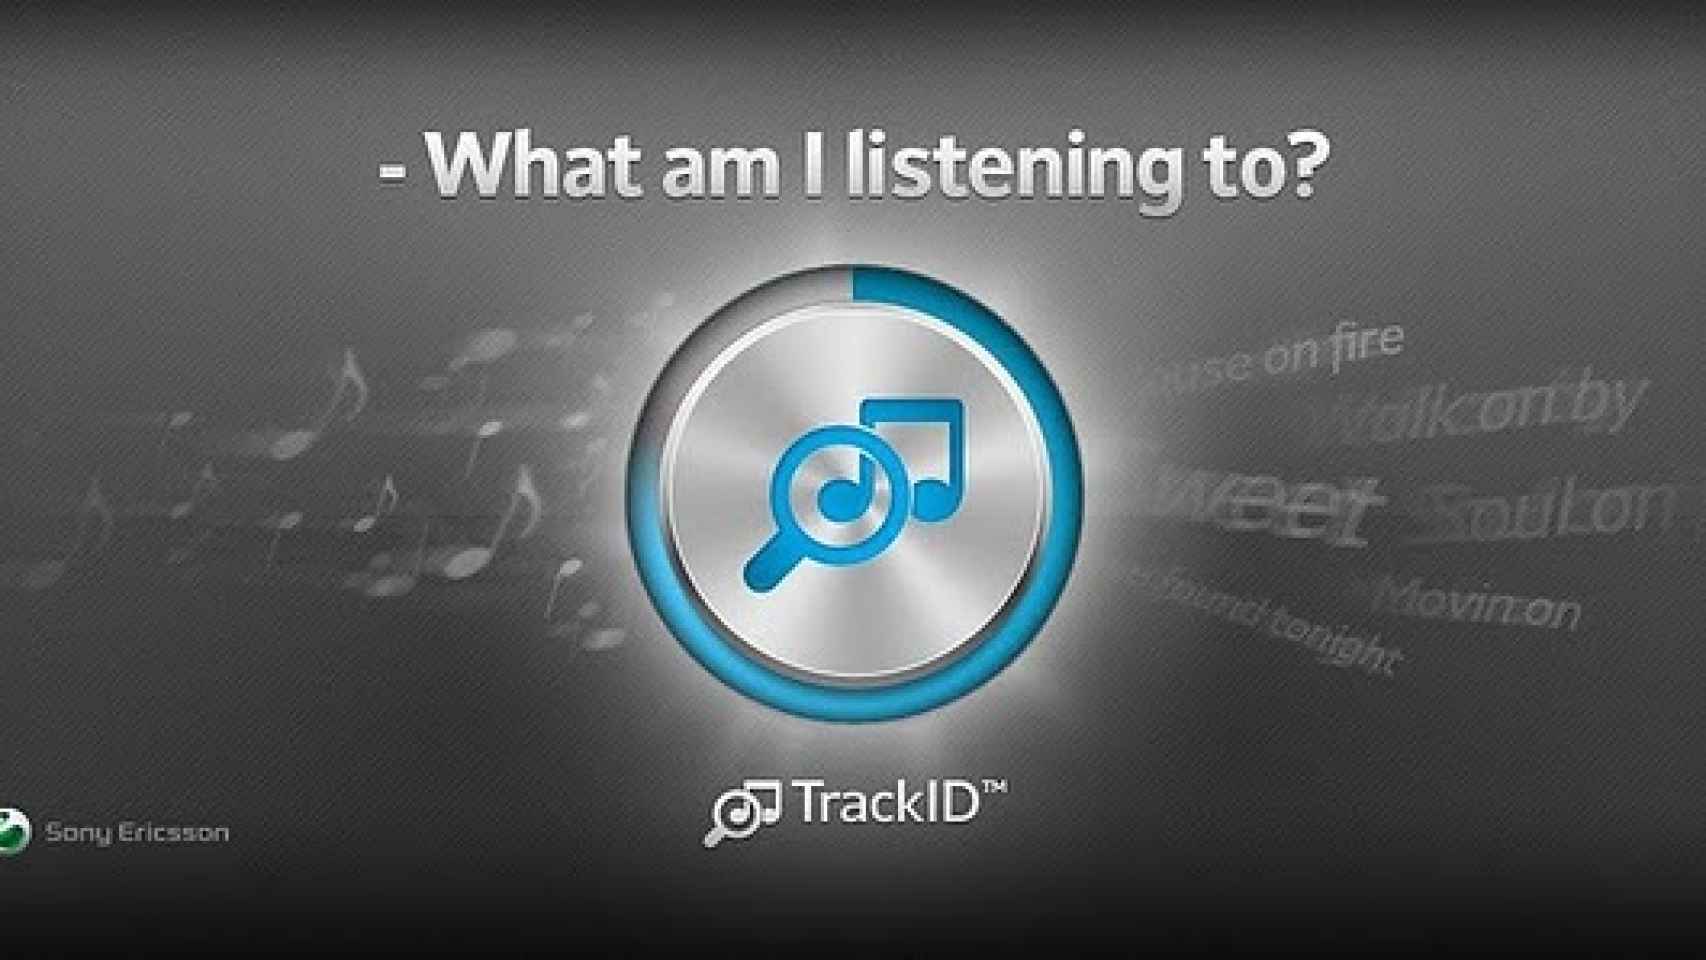 Sony Ericsson lanza su propia app de reconocimiento musical TrackID